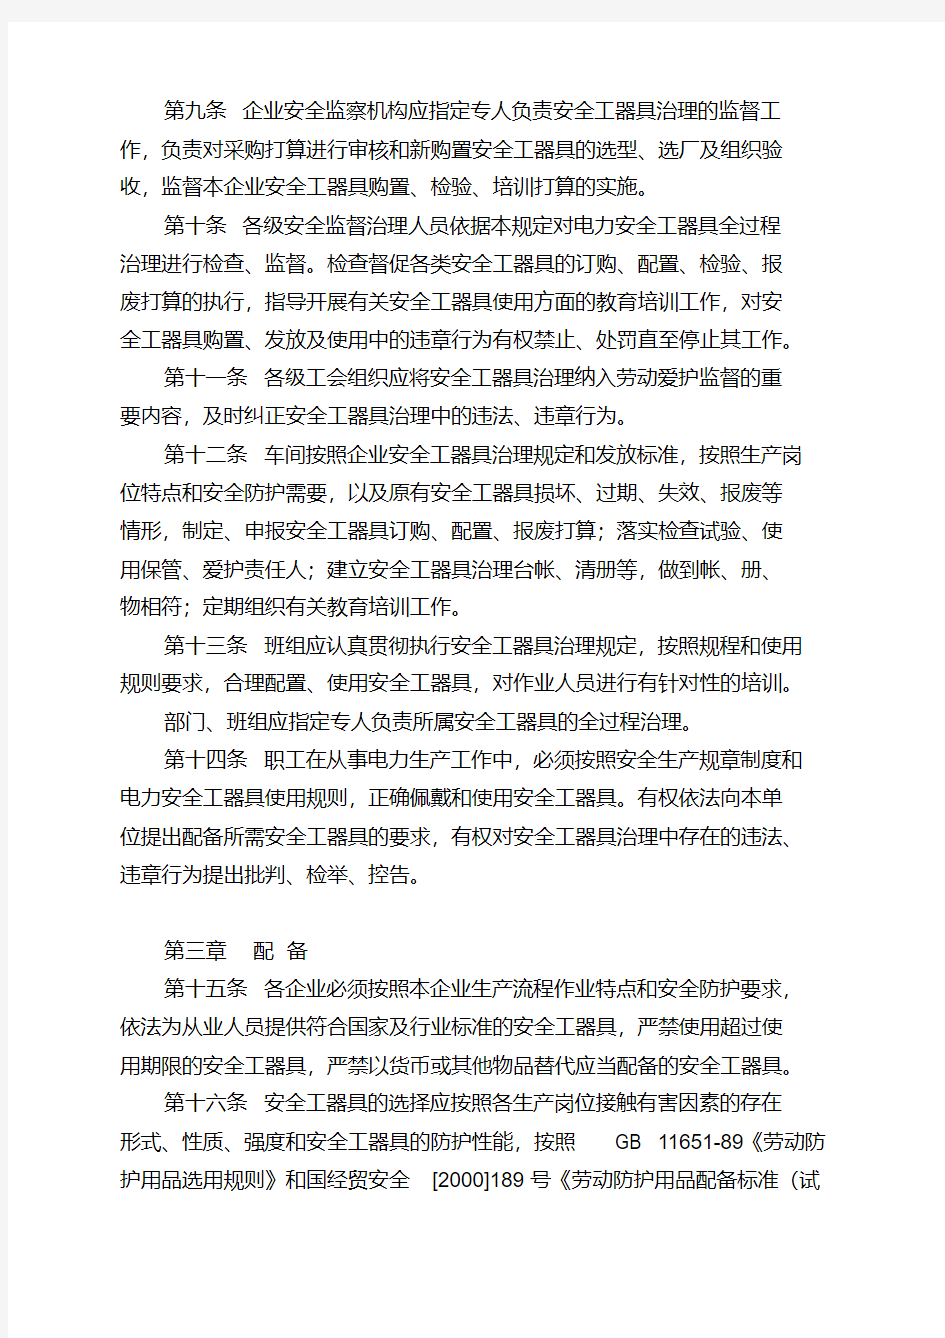 中国华电集团公司安全工器具管理规定